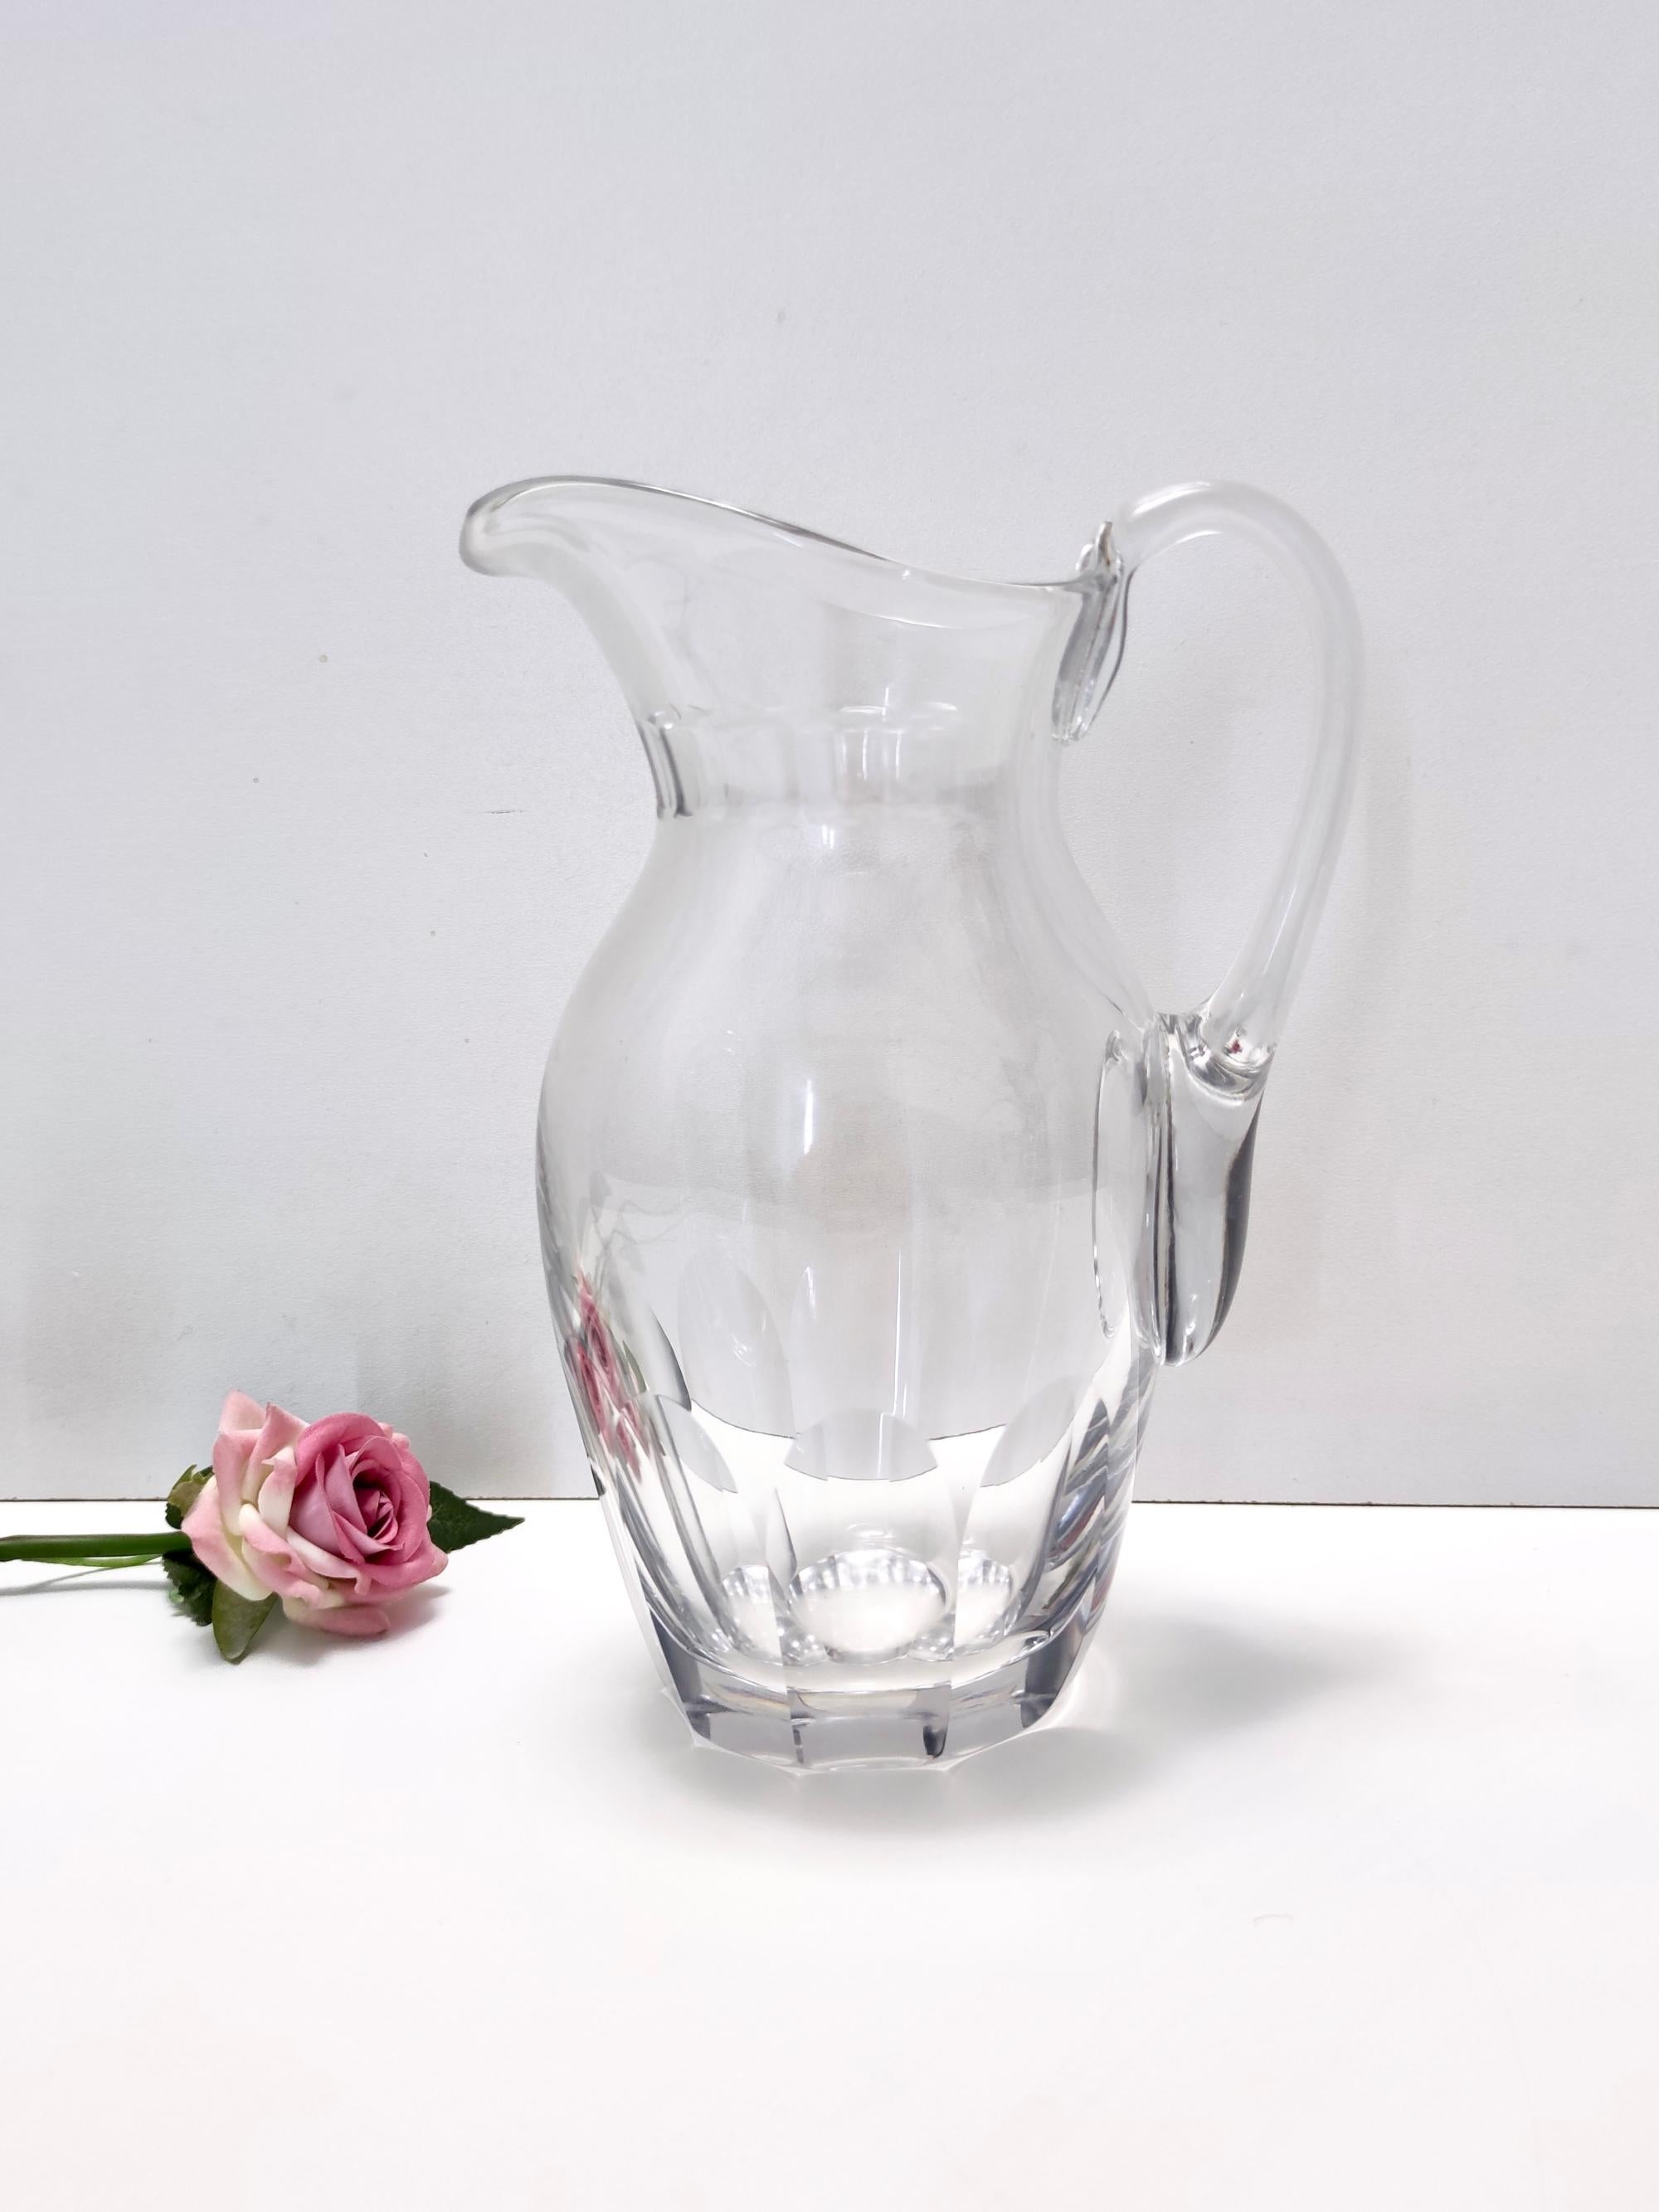 1960s.
Dieser hochwertige Krug / Vase ist aus transparentem Kristall gefertigt. 
Da es sich um ein Vintage-Stück handelt, kann es leichte Gebrauchsspuren aufweisen, aber es ist in perfektem Originalzustand und bereit, ein Stück in einer Wohnung zu